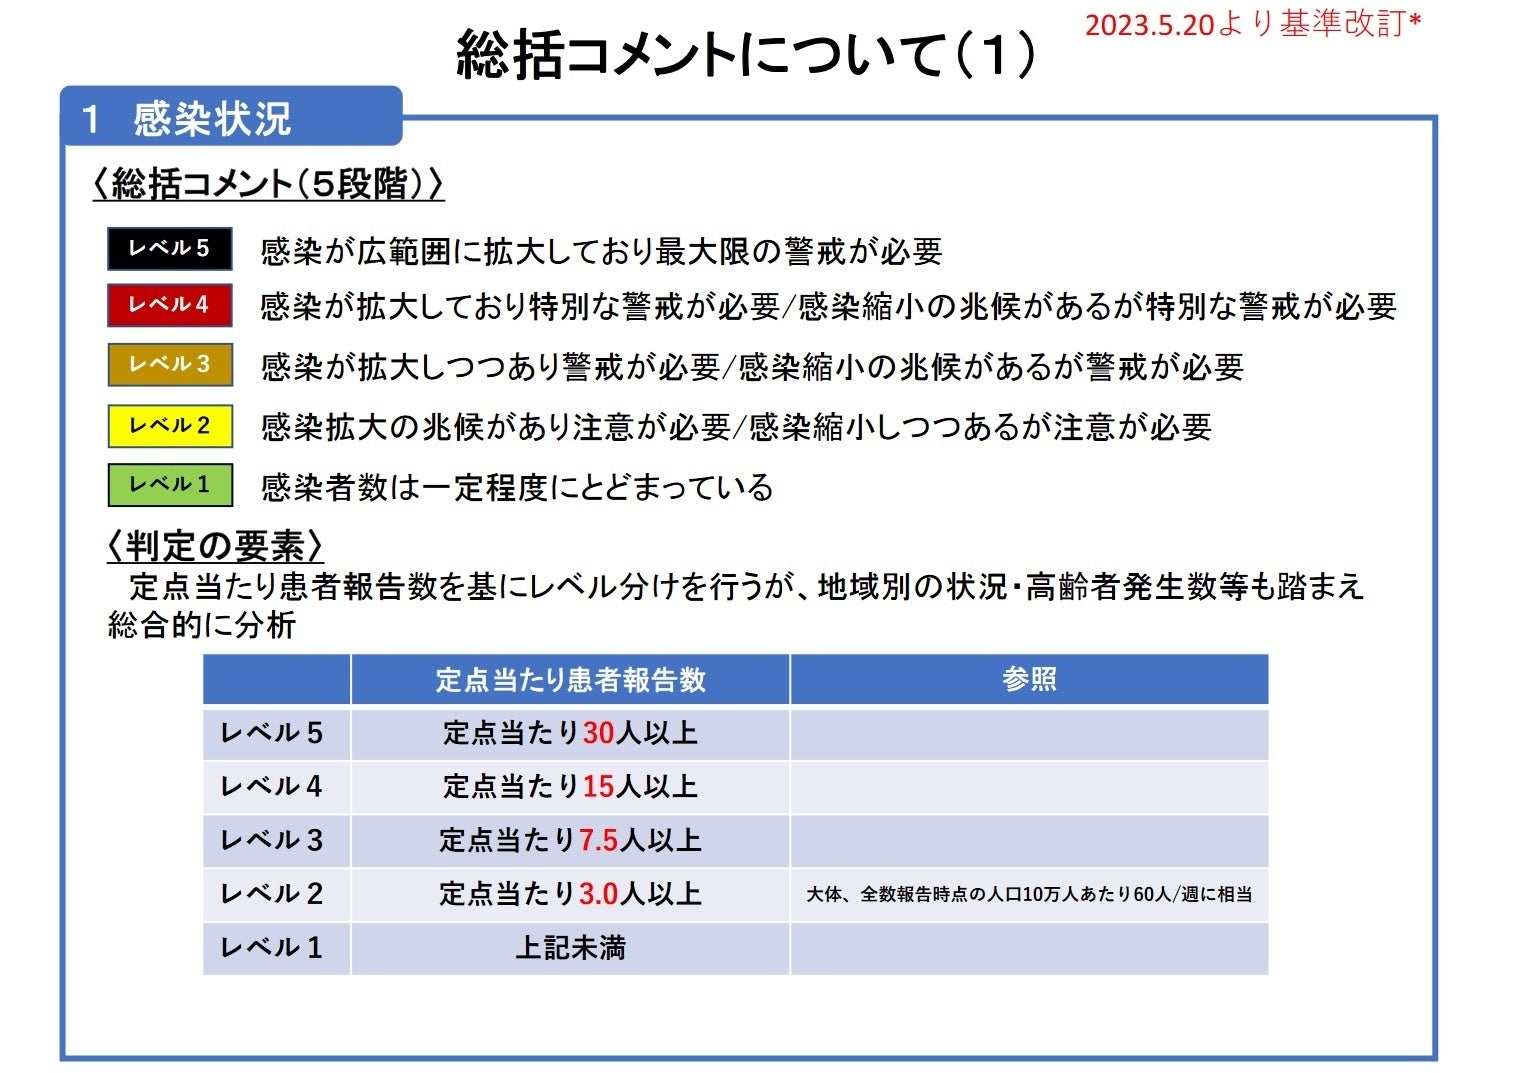 【岡山大学】岡山県内の感染状況・医療提供体制の分析について（2024年2月23日現在）